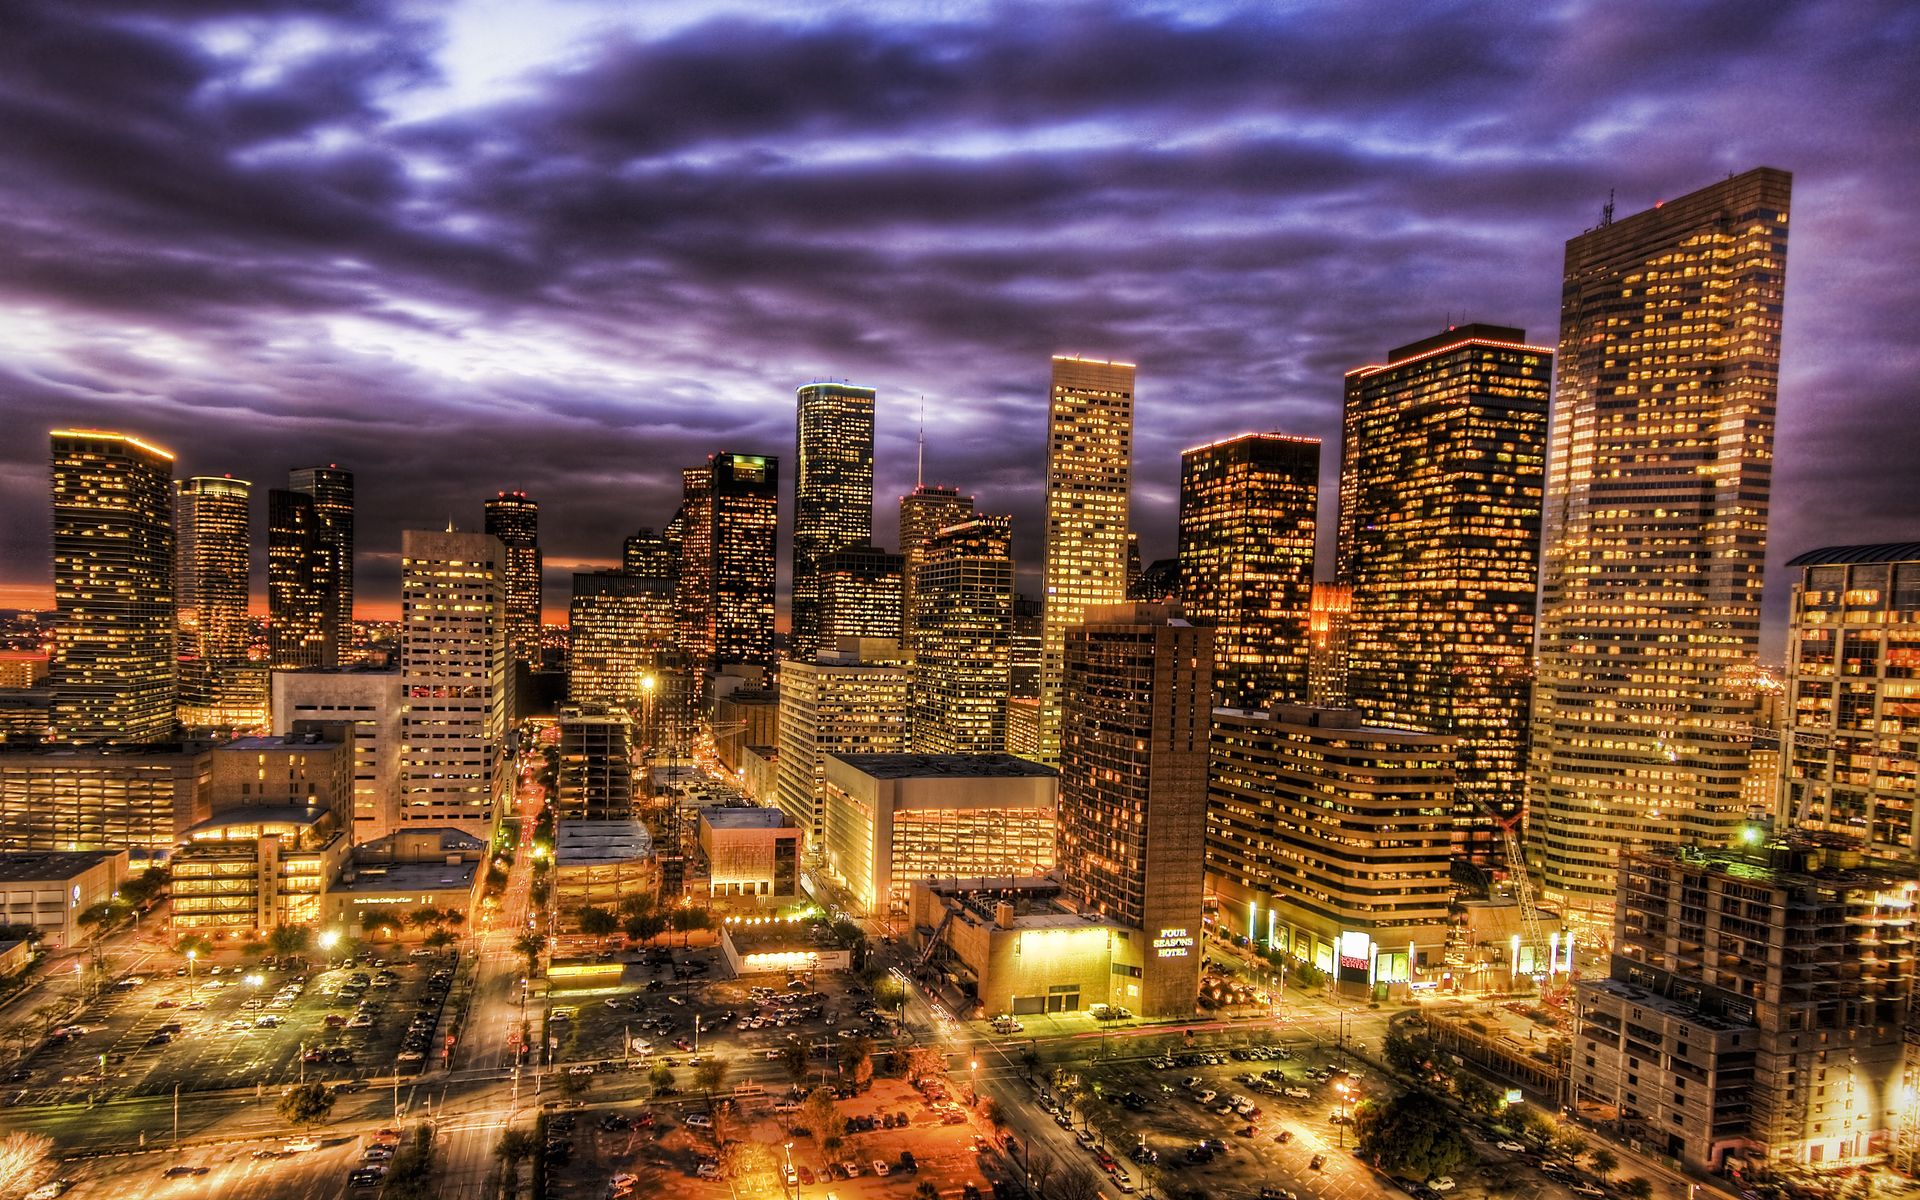 Houston Texas Skyline at Night